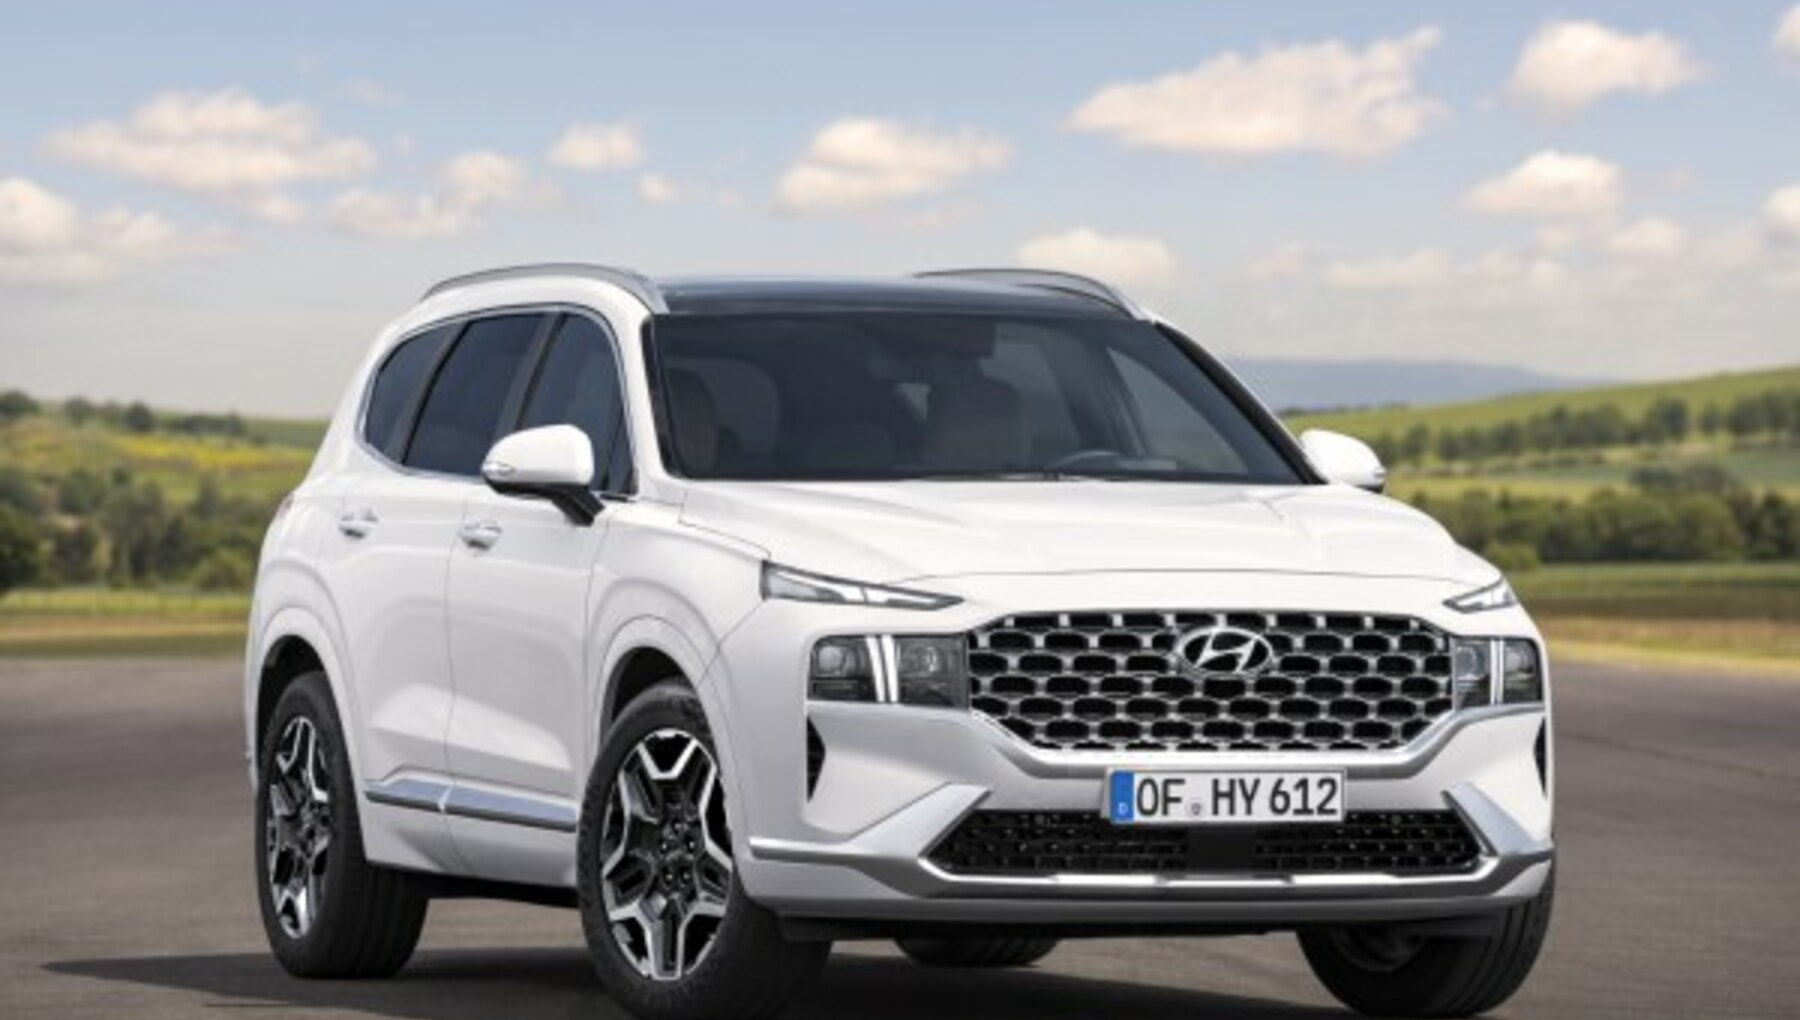 Hyundai Santa Fe IV (facelift 2020) 2.2 CRDi (202 Hp) 4WD DCT 7 Seat 2020, 2021, 2022 